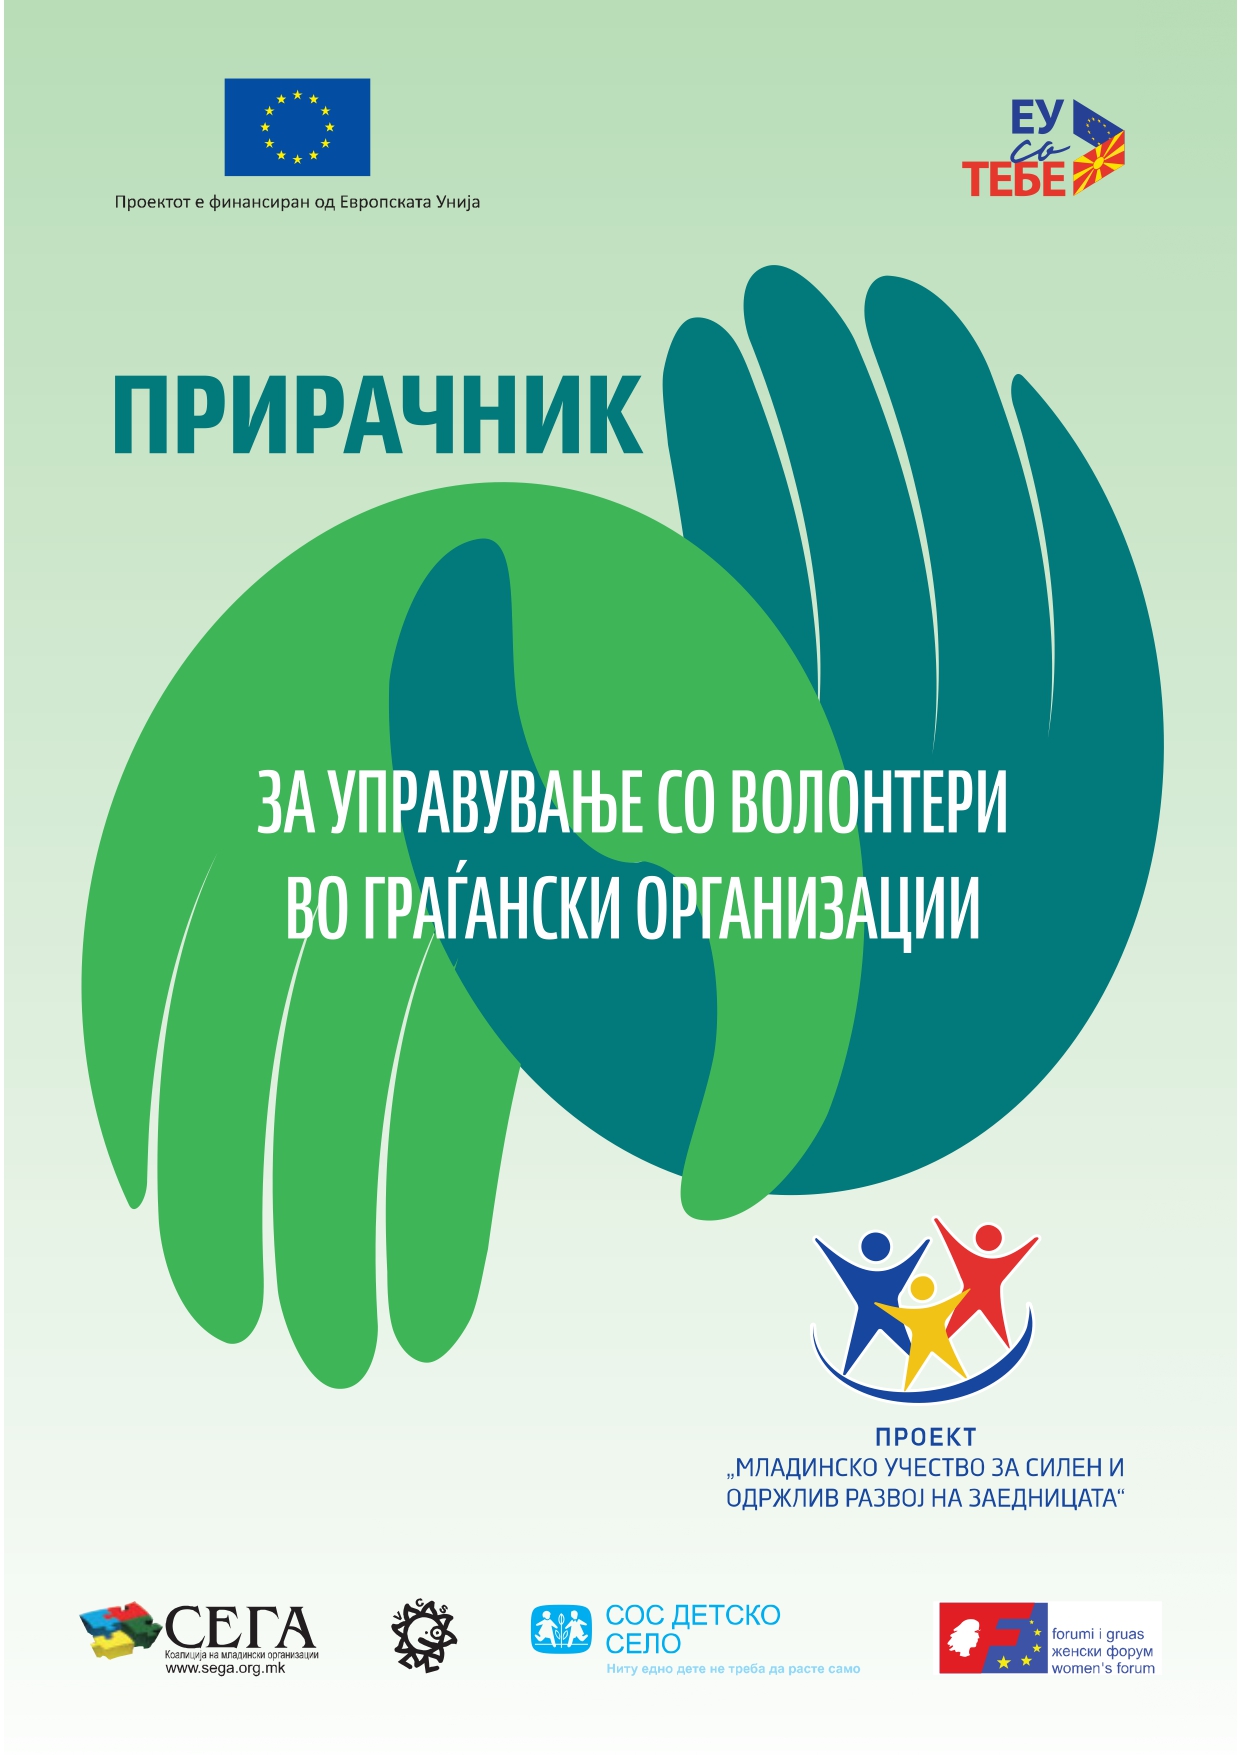 You are currently viewing (Македонски) Прирачник за управување со волонтери во граѓански организации